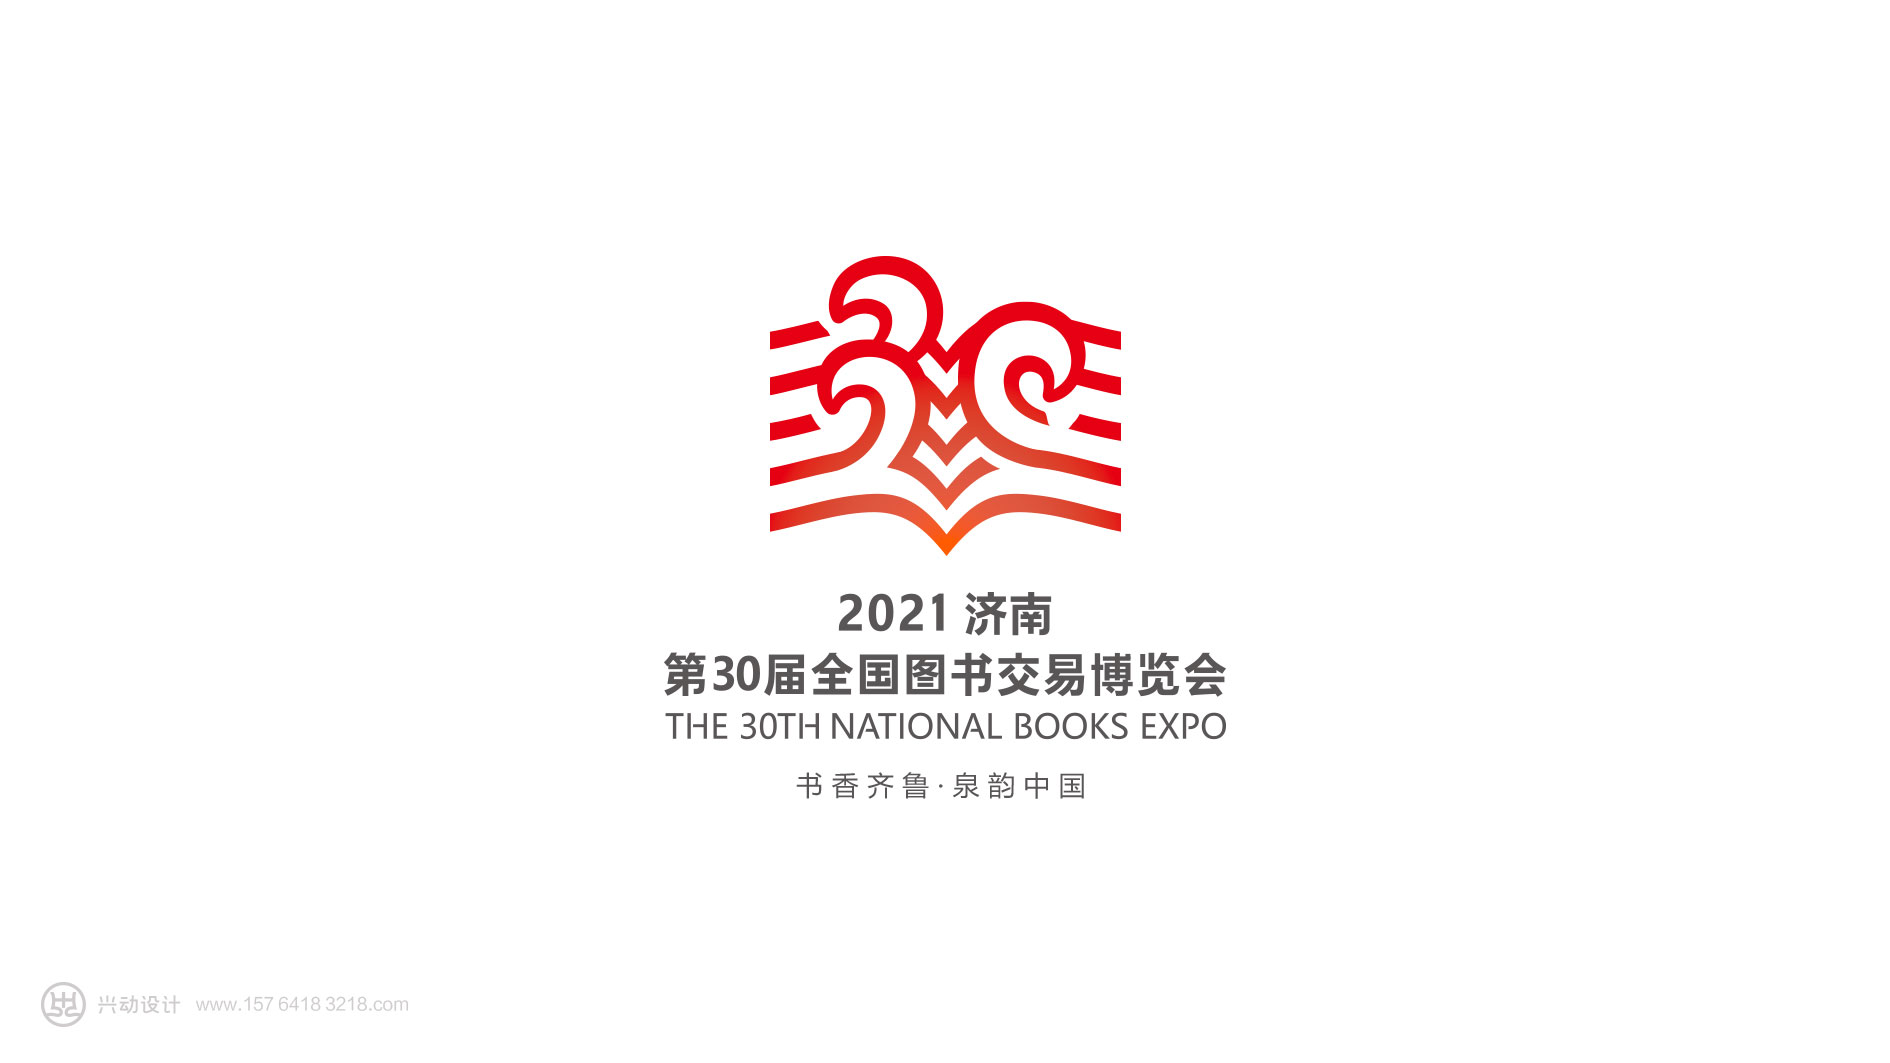 2021济南第30届全国图书交易博览会标志设计